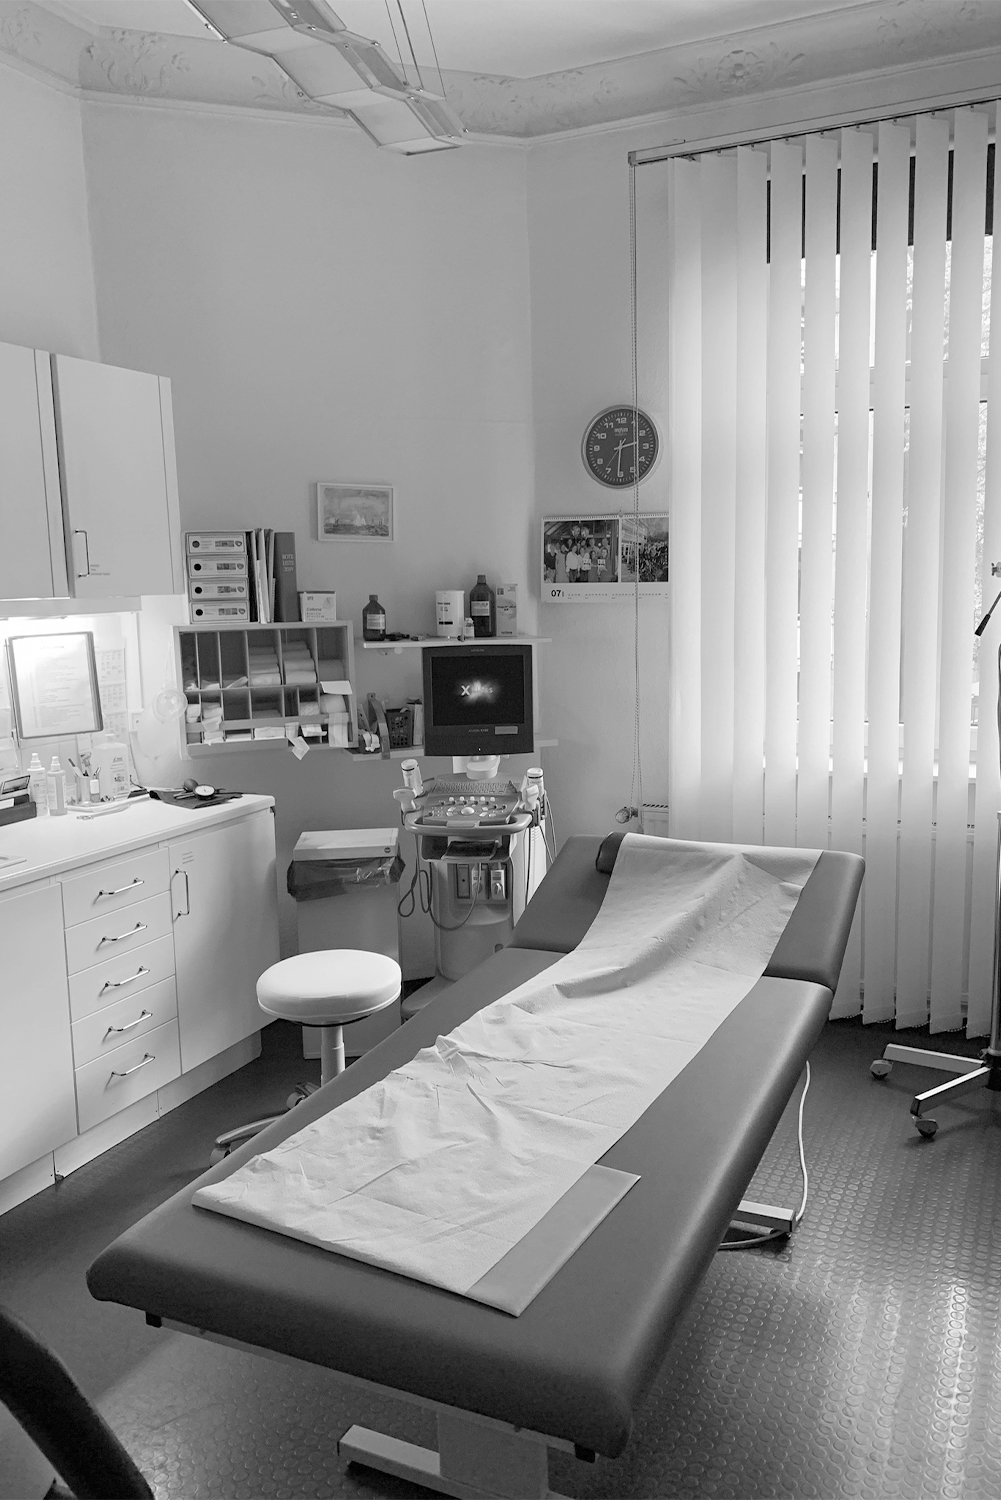 Arztpraxis mit Werkbank, medizinische Instrumente in der Arztpraxis von Dr. Stocker und Dr. Sell in Nürnberg.